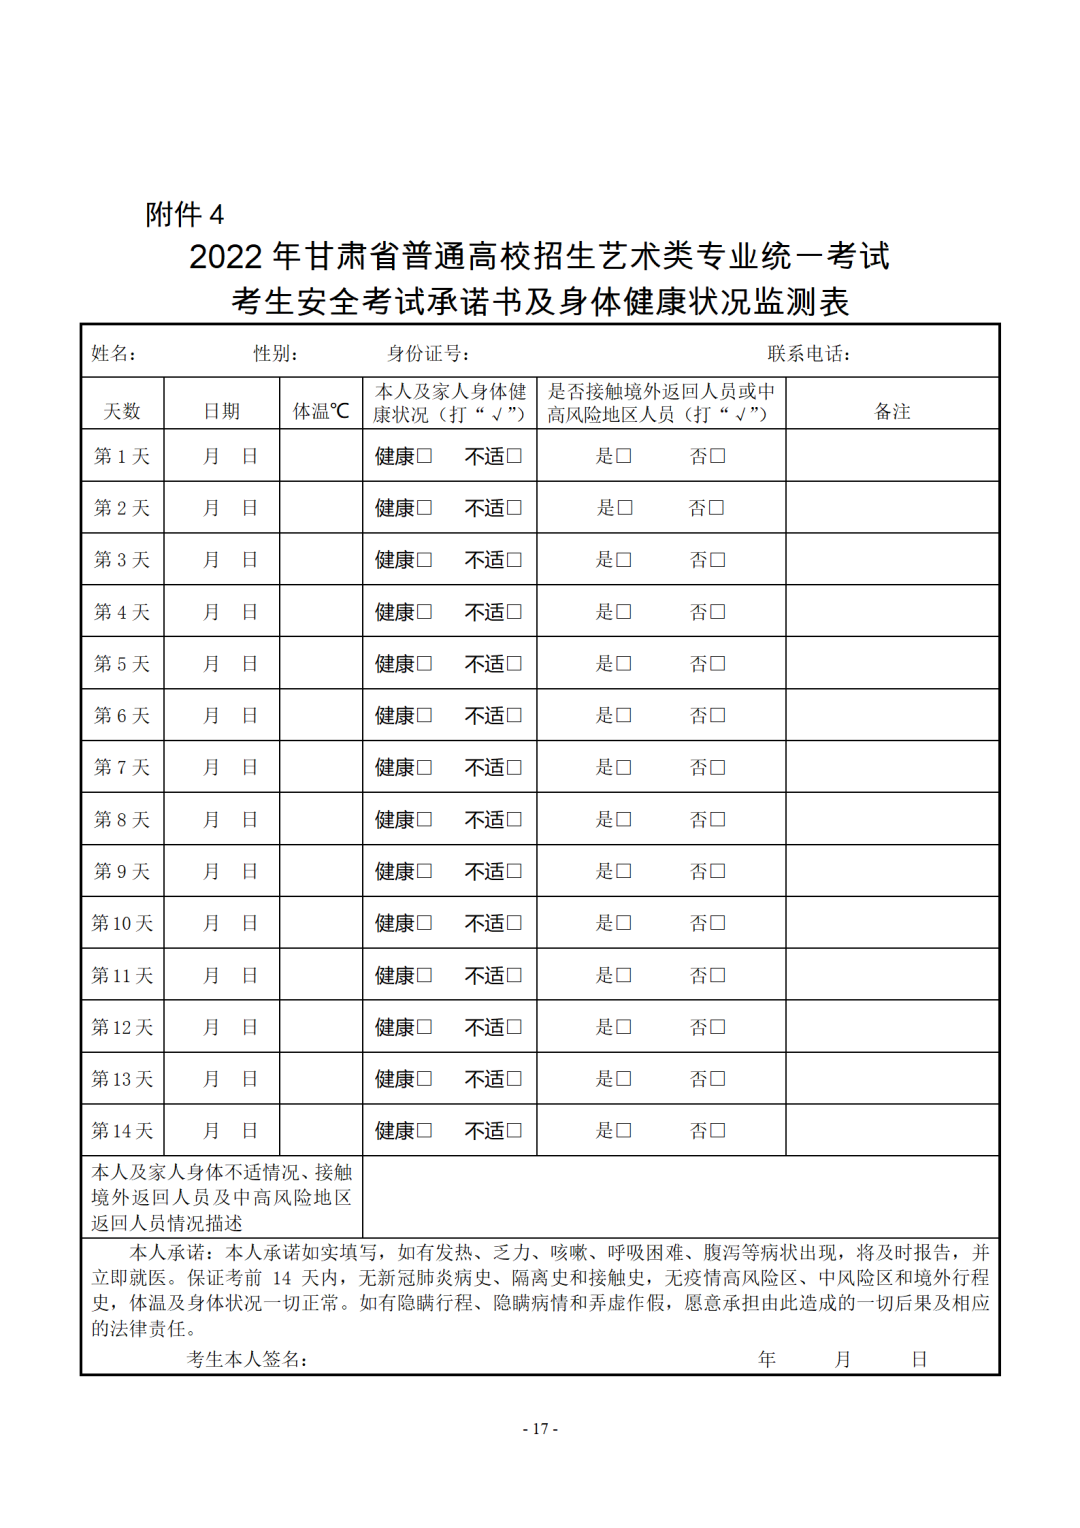 关于做好2022年甘肃省普通高等学校招生艺术类专业统一考试工作的通知